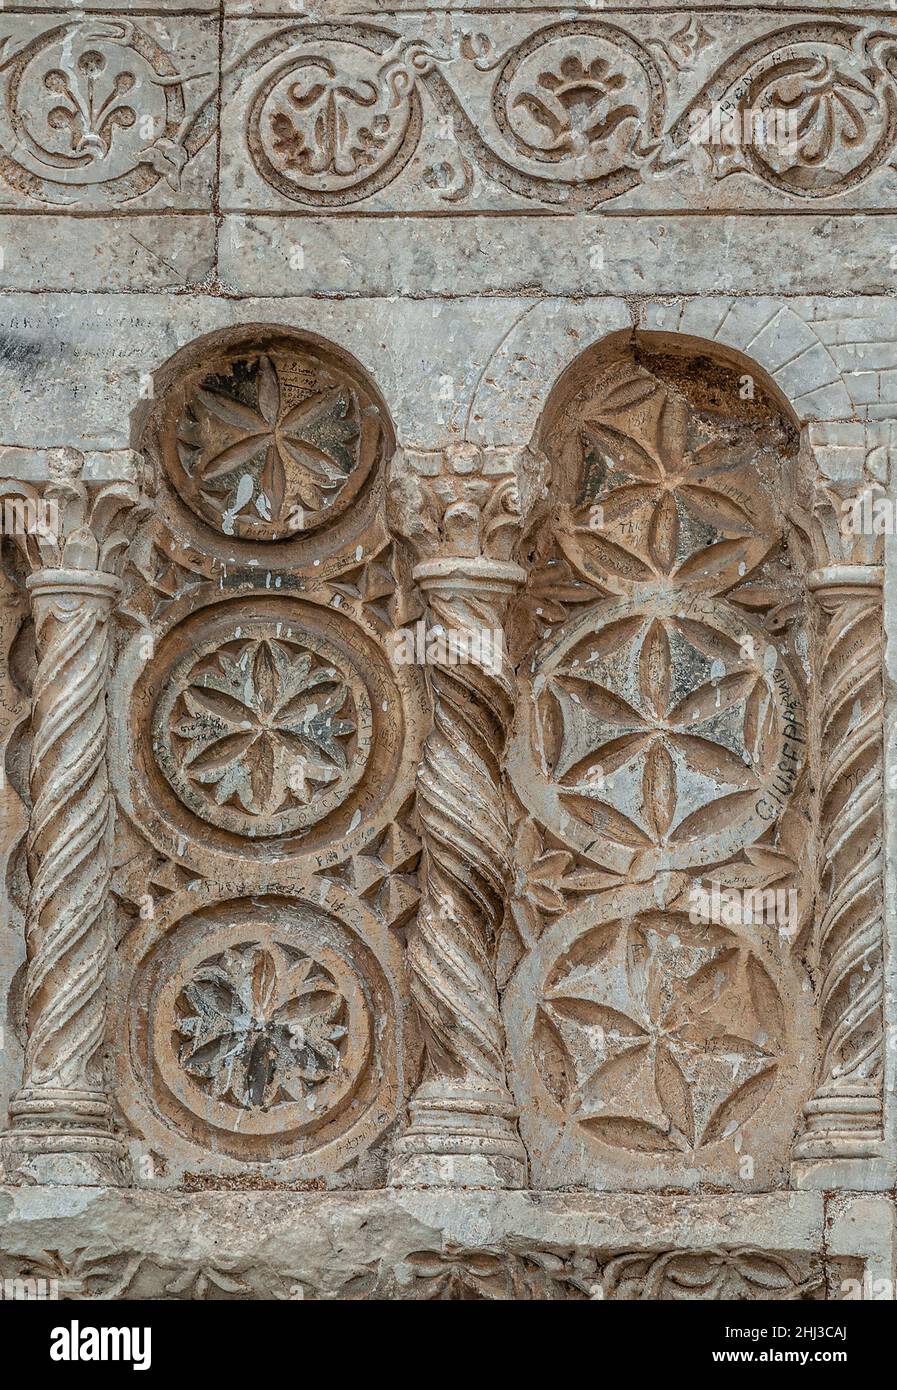 Gros plan des ornements médiévaux à la façade de l'église Saint-Pierre, Chiesa San Pietro, Spoleto, Italie Banque D'Images